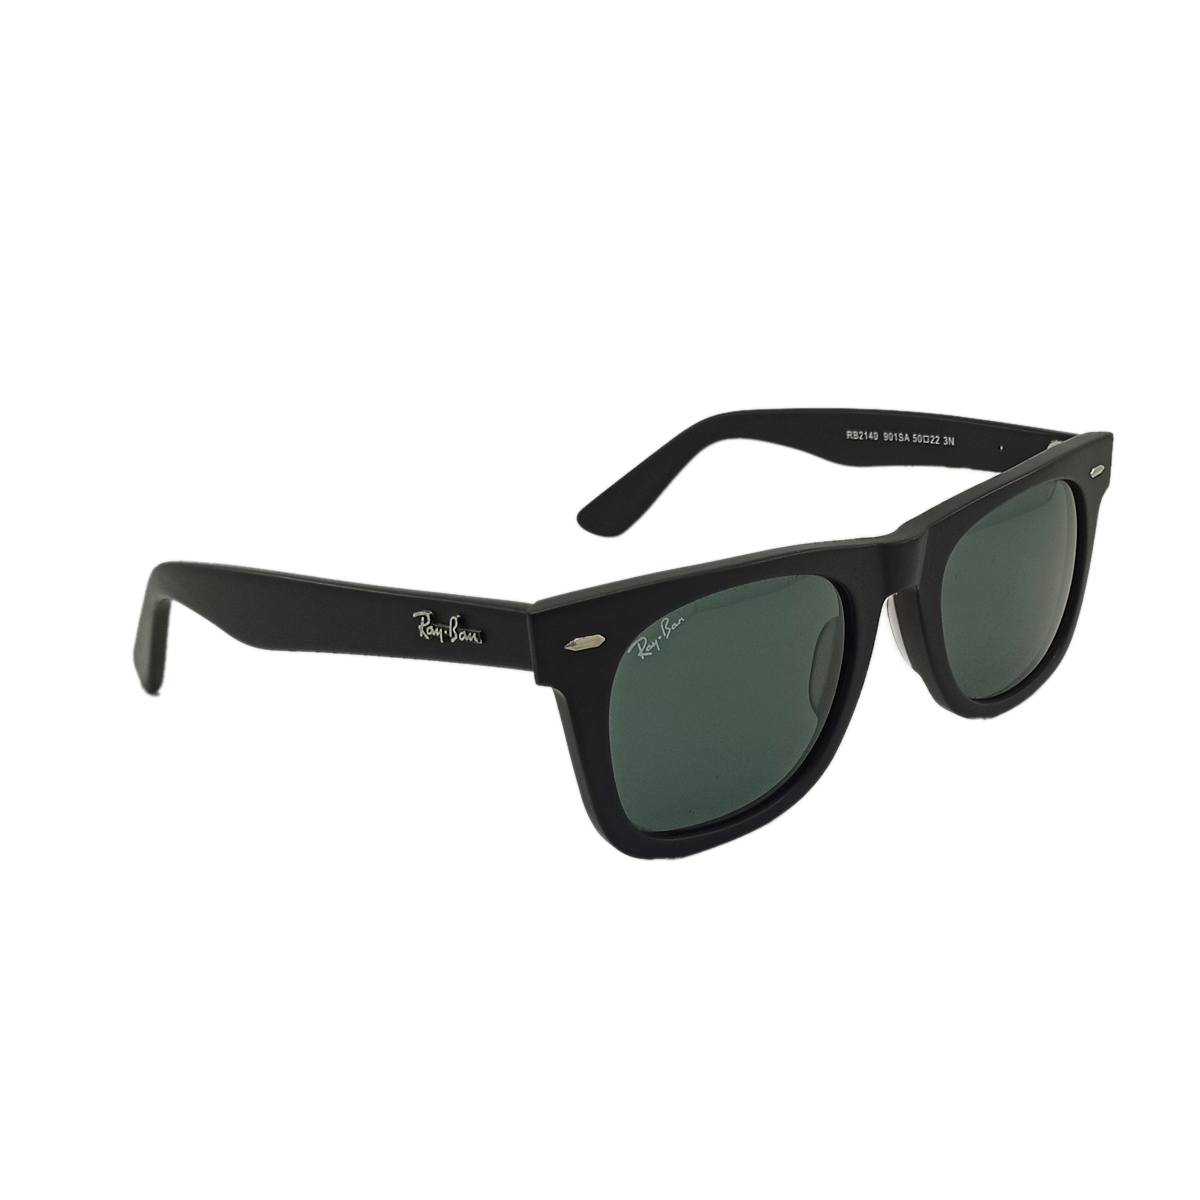 Wayfarer Sunglasses - RB2140 901SA